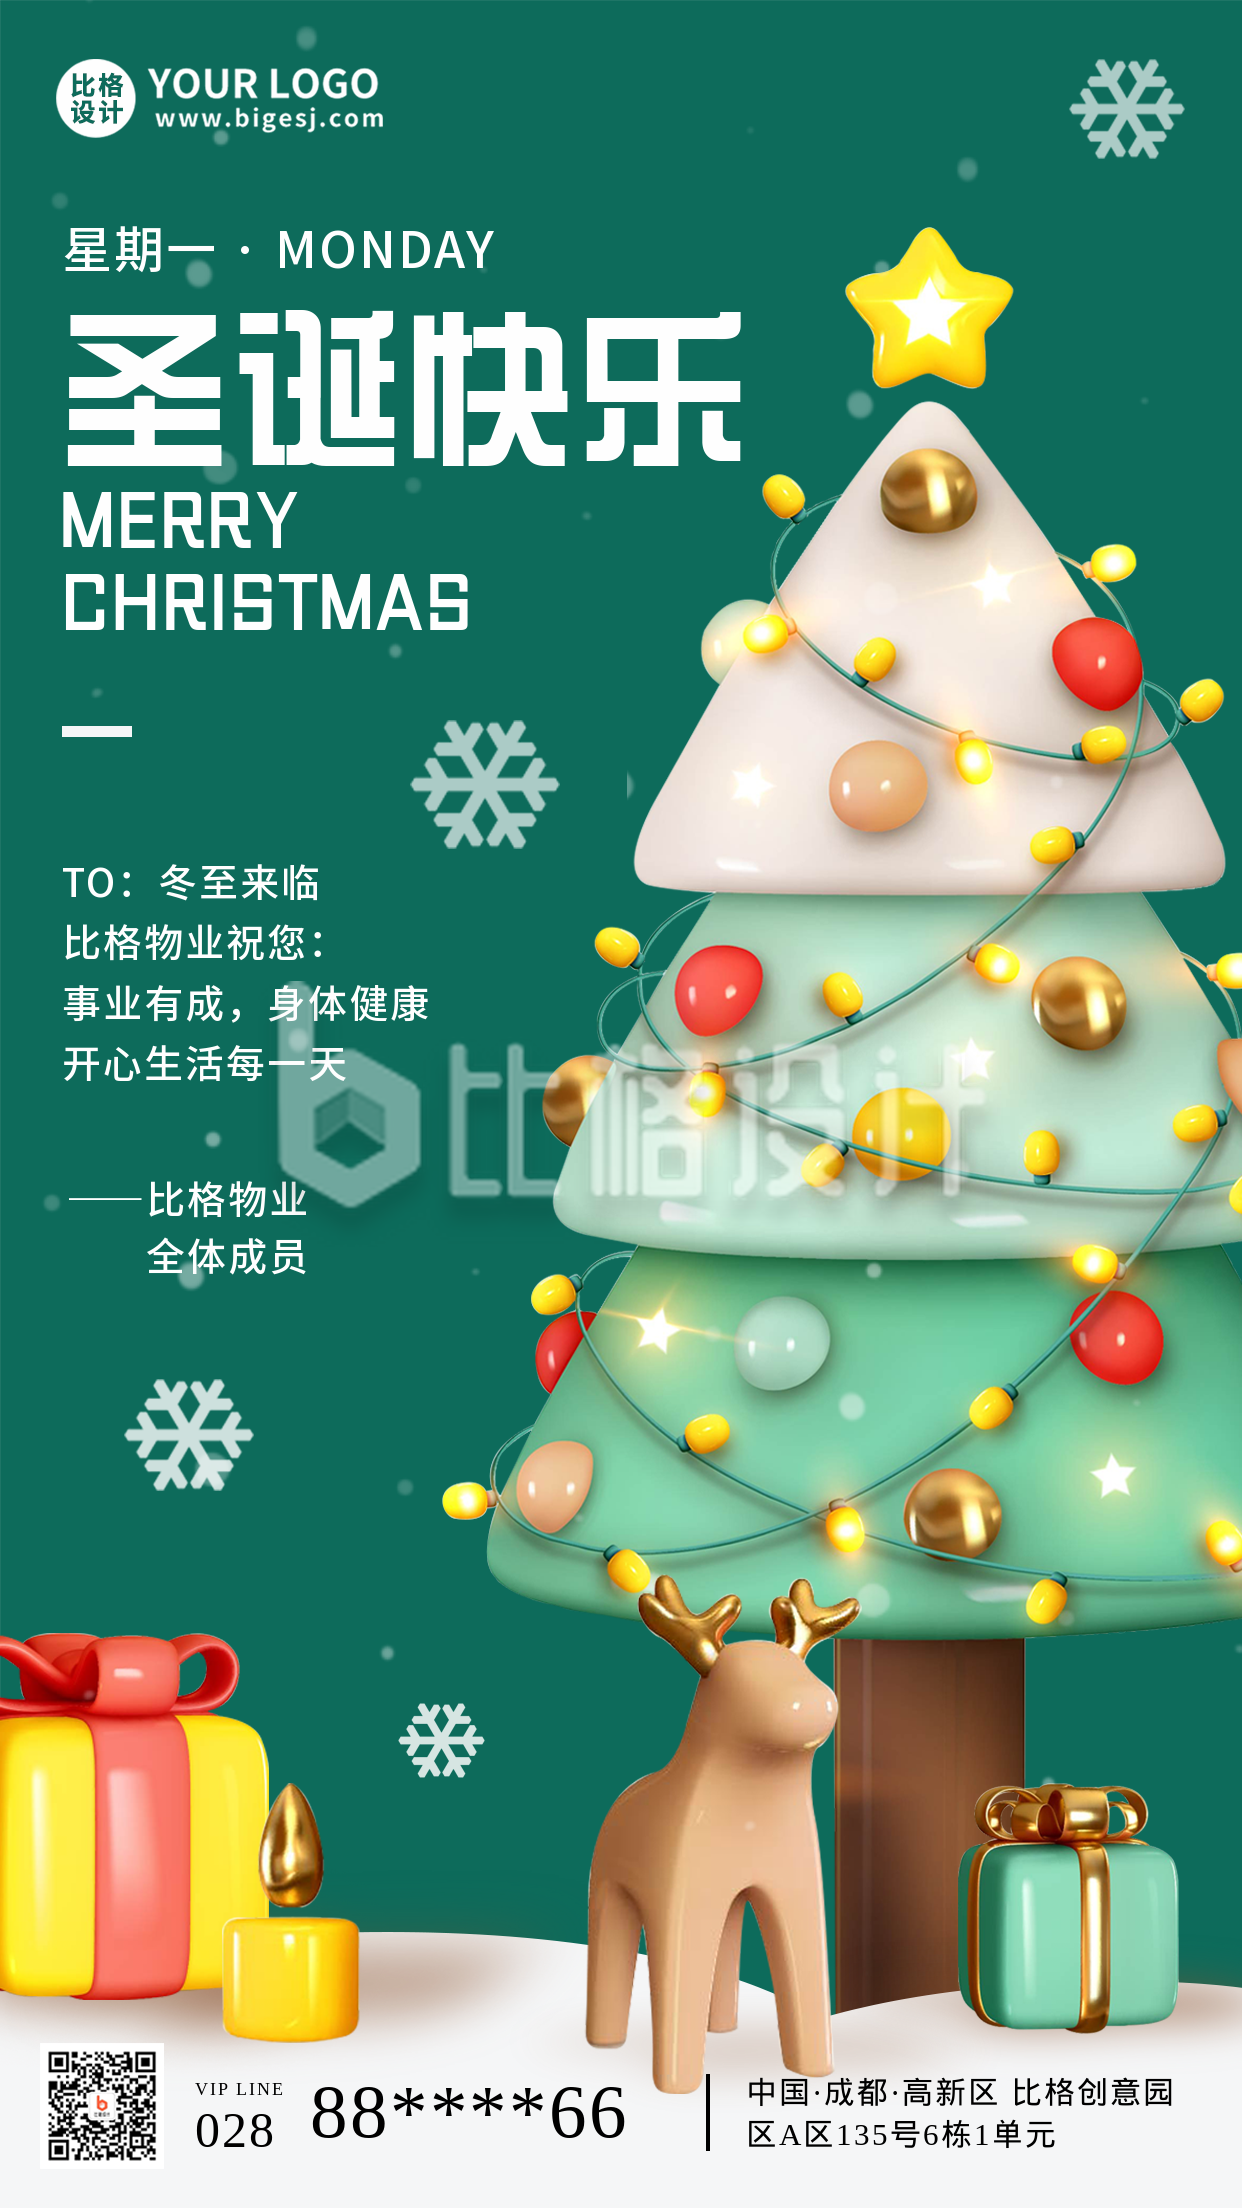 圣诞节祝福领取礼物宣传手机海报